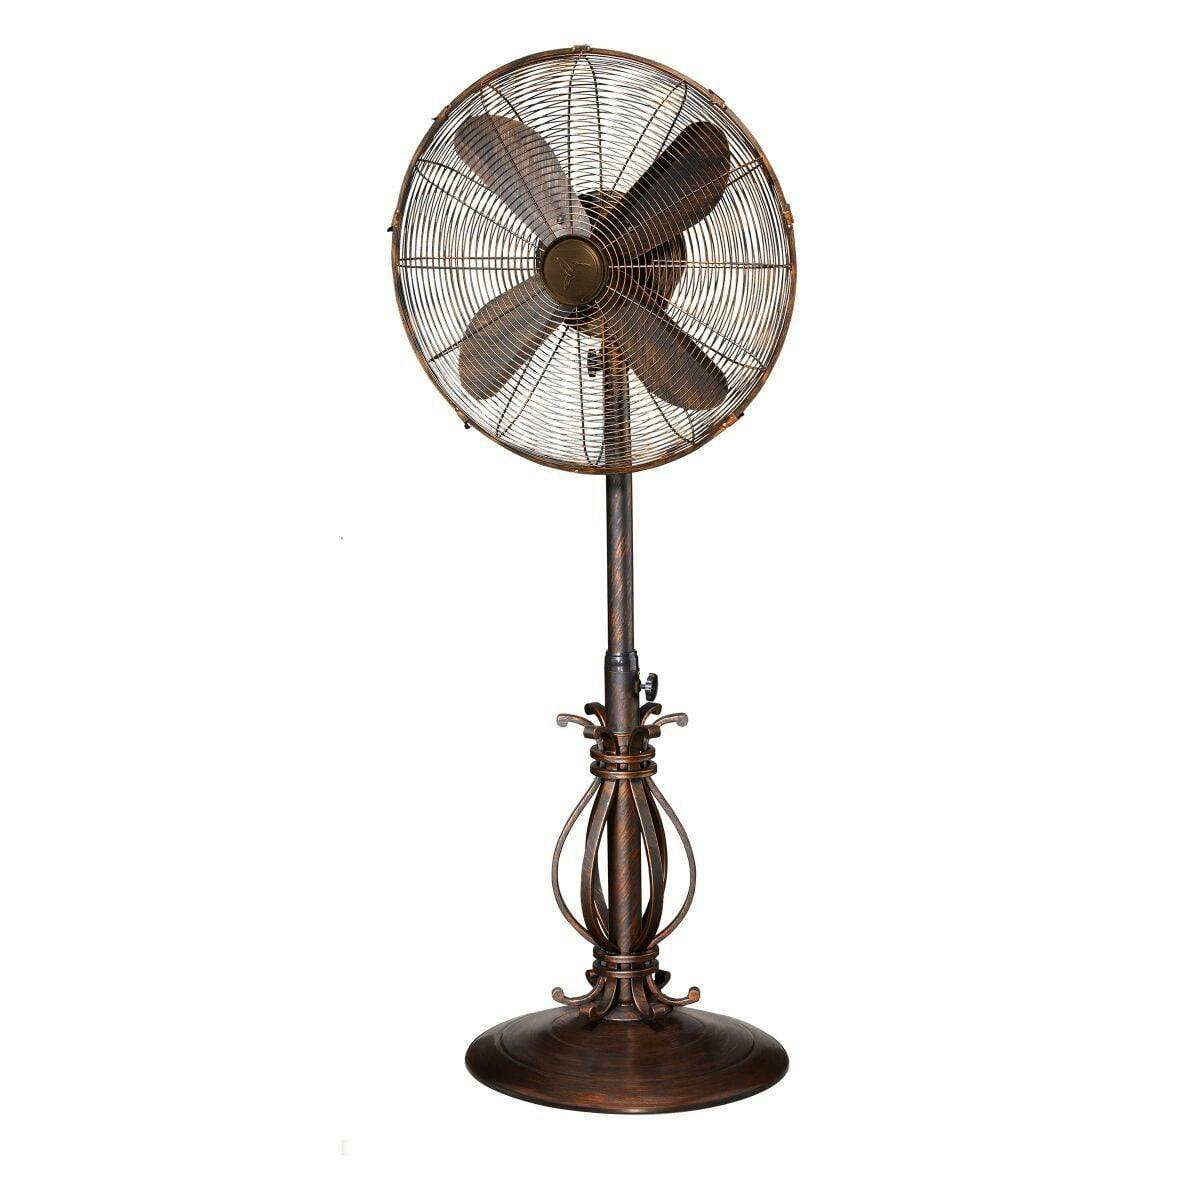 Prestigious Brown 18" Oscillating Outdoor Floor Fan with Adjustable Height